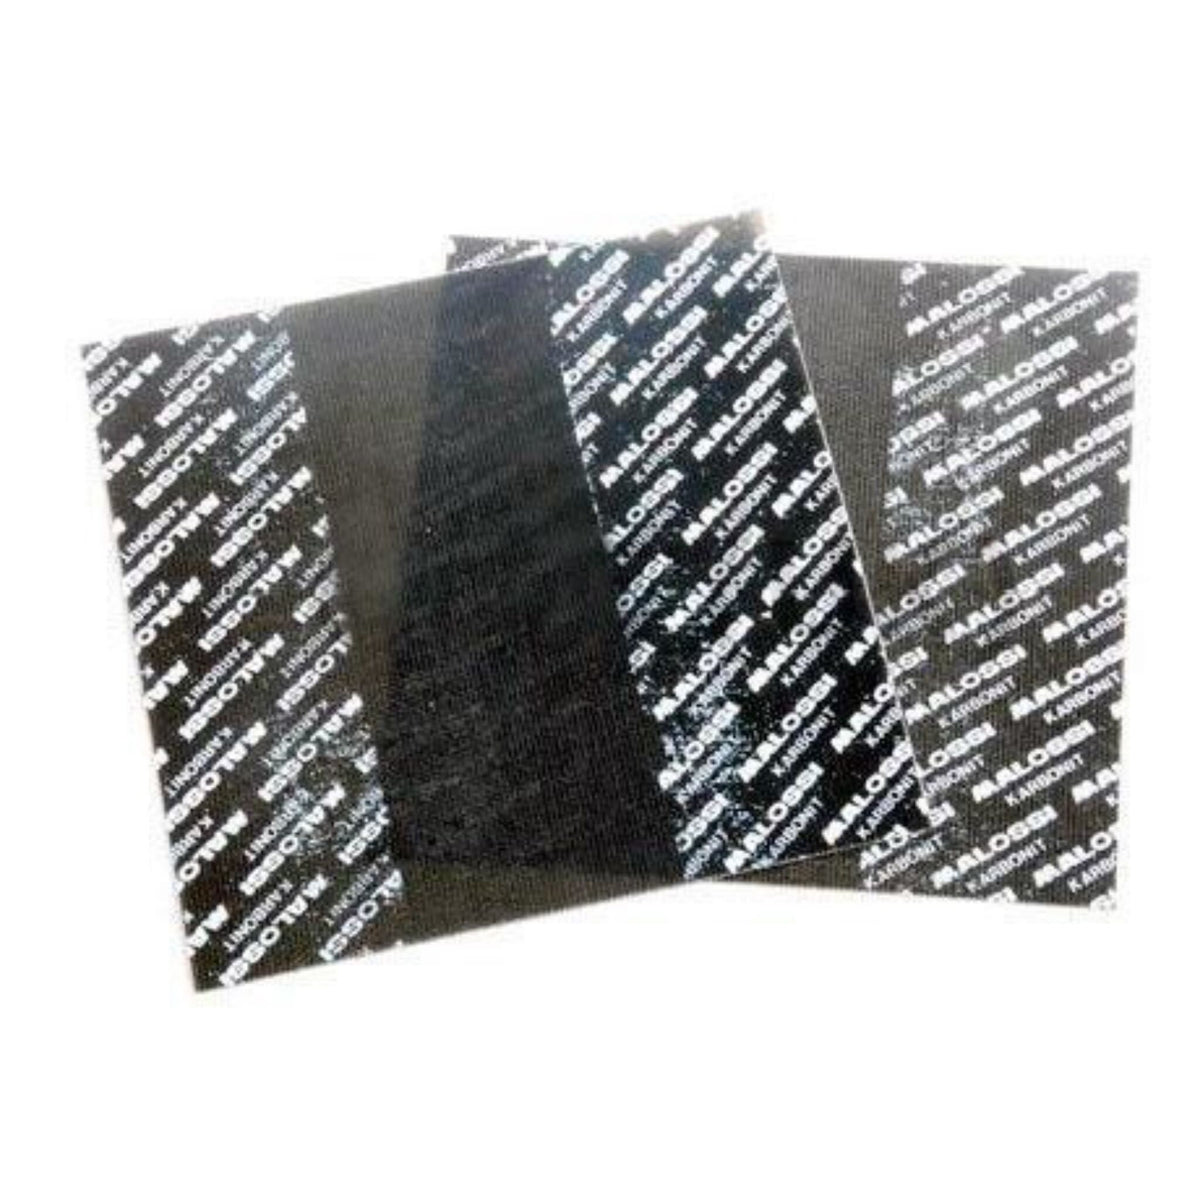 Reed Petal Karbinit Fibre Sheet Malossi 2x 100 x 100 x 0.35mm